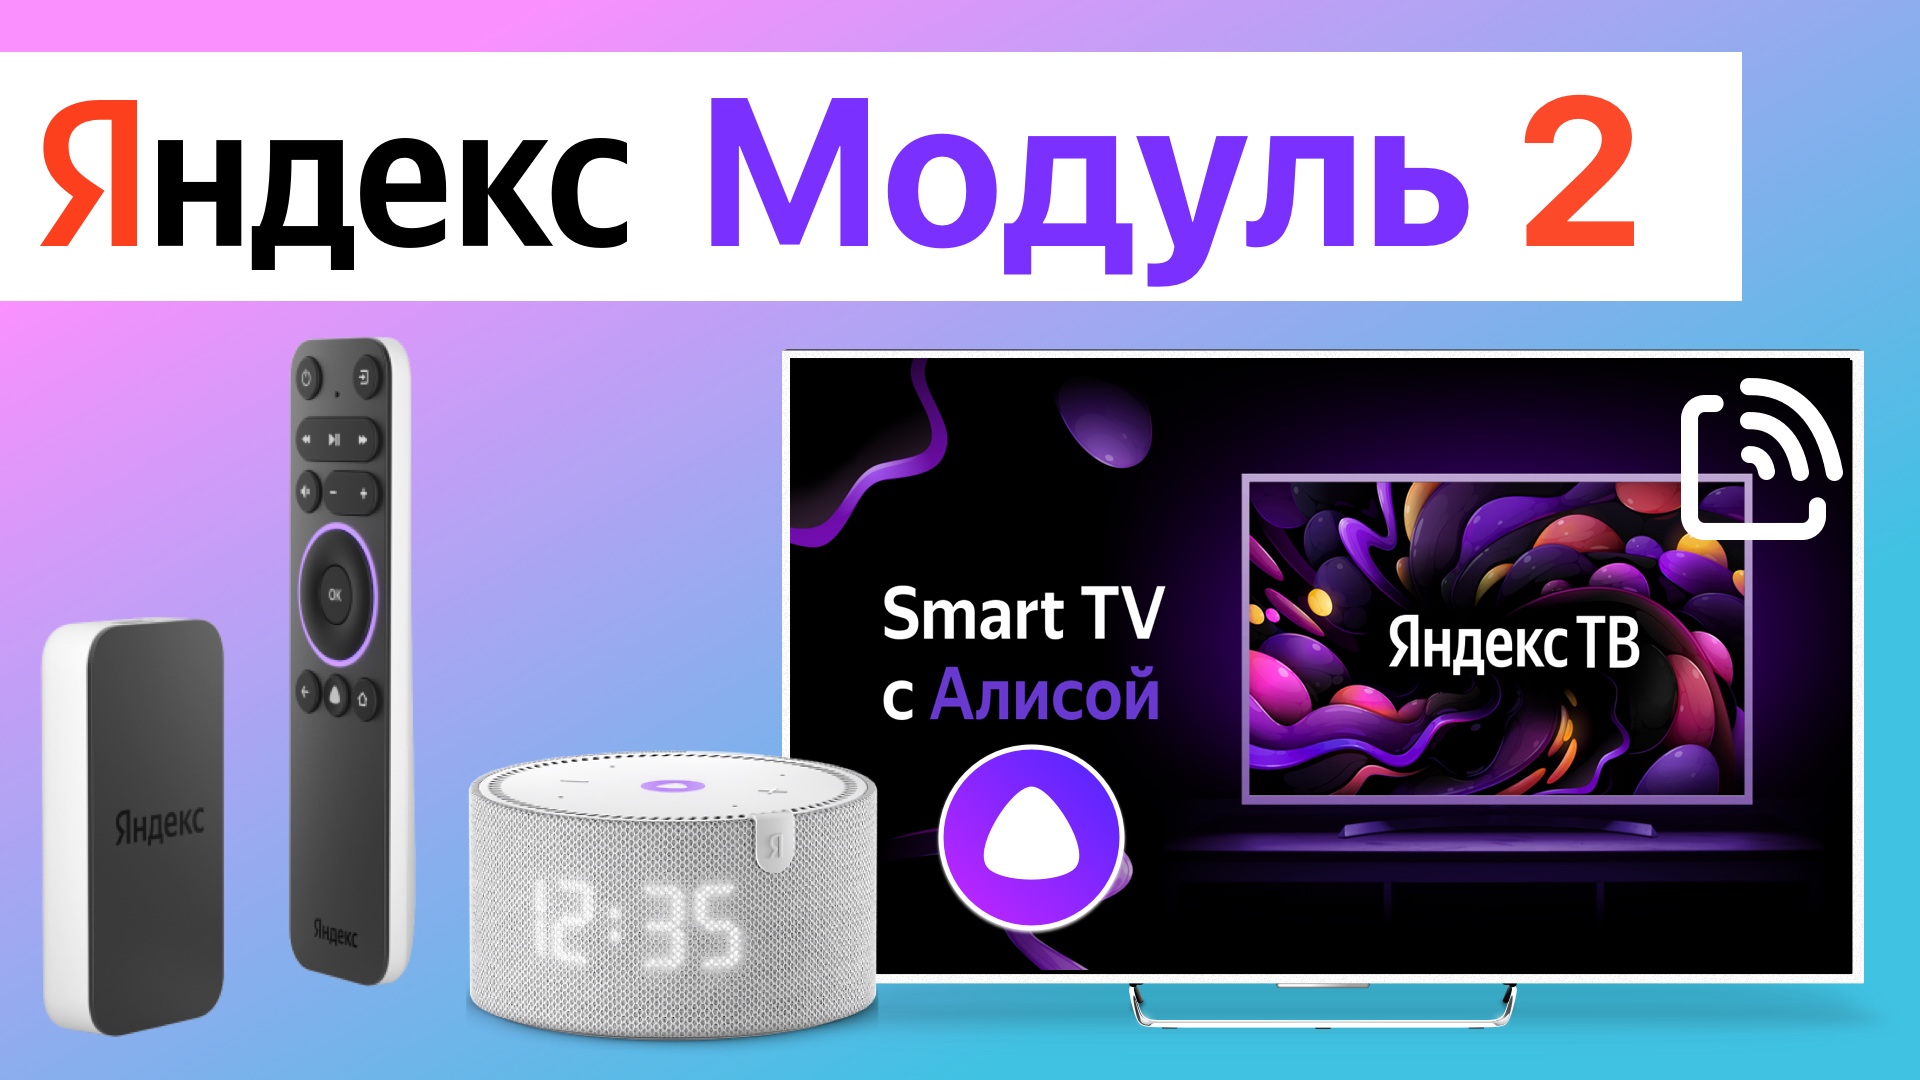 Яндекс Модуль 2 и пульт с Алисой, смарт ТВ приставка обзор, Станция НЕ нужна